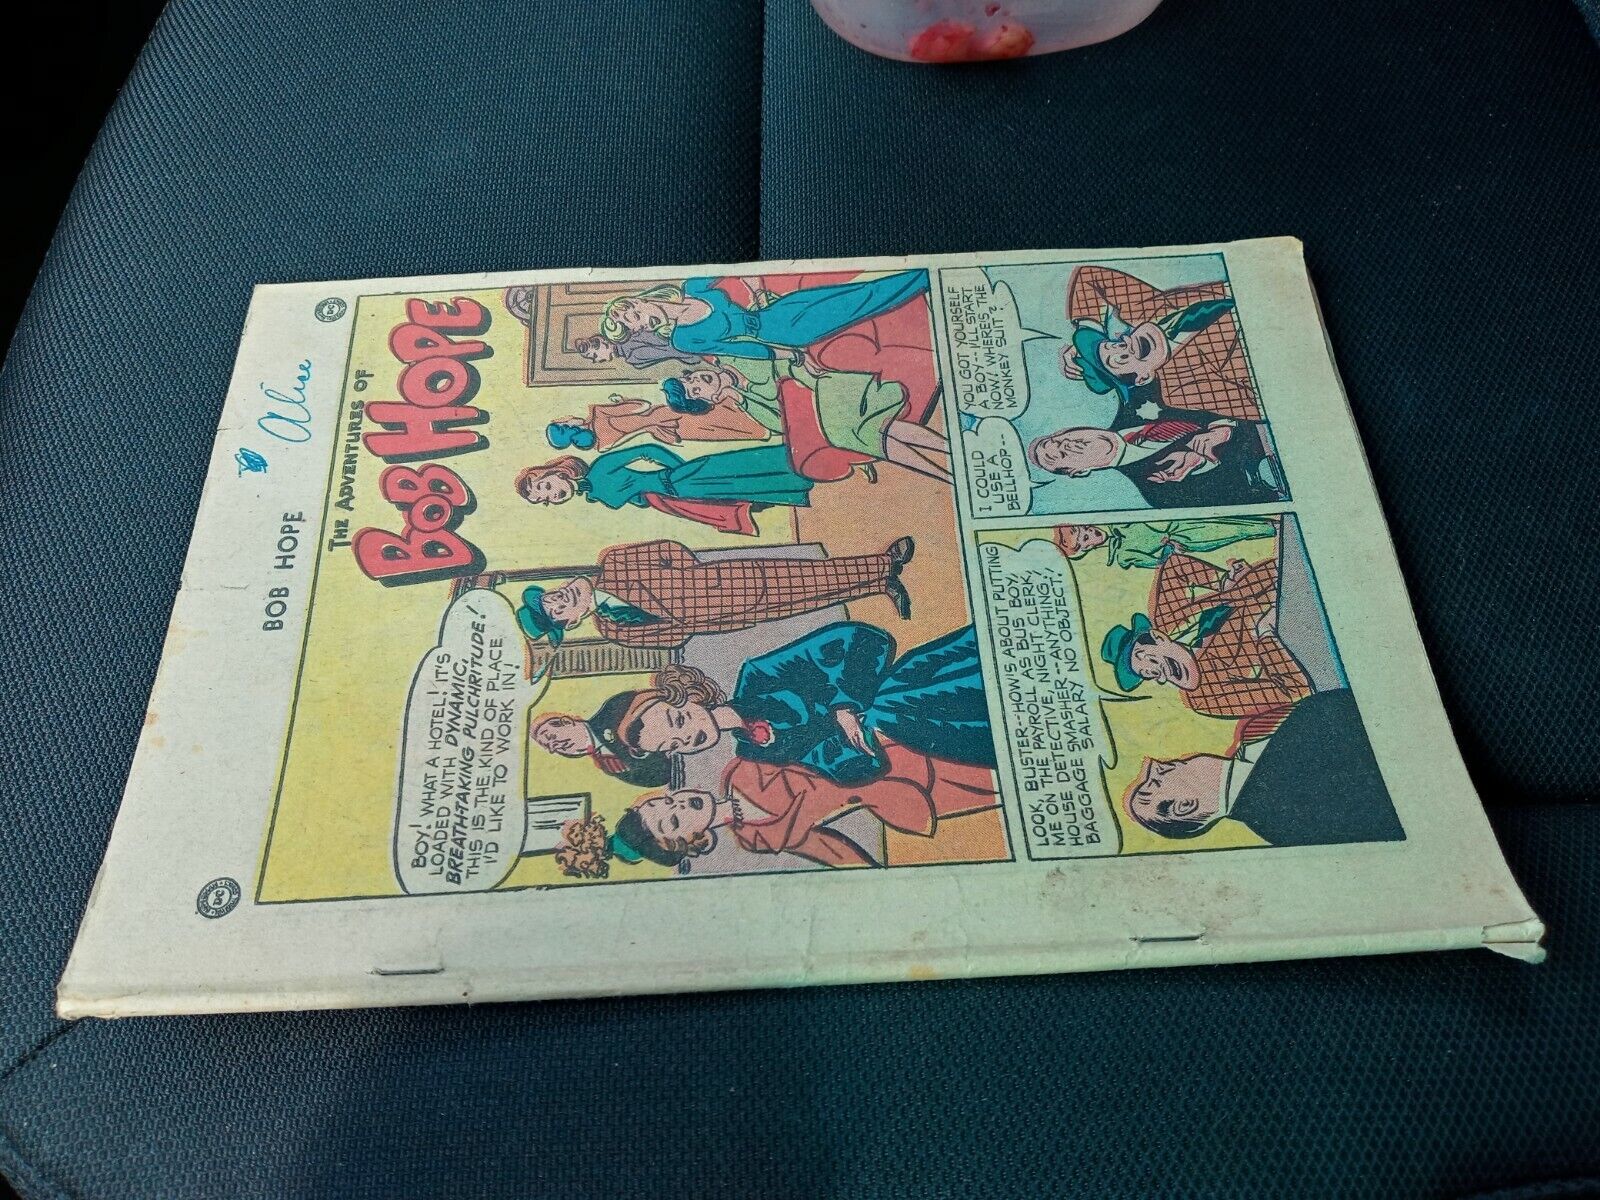 adventures of bob hope 8 dc comics 1951 golden age good girl art teen humor book